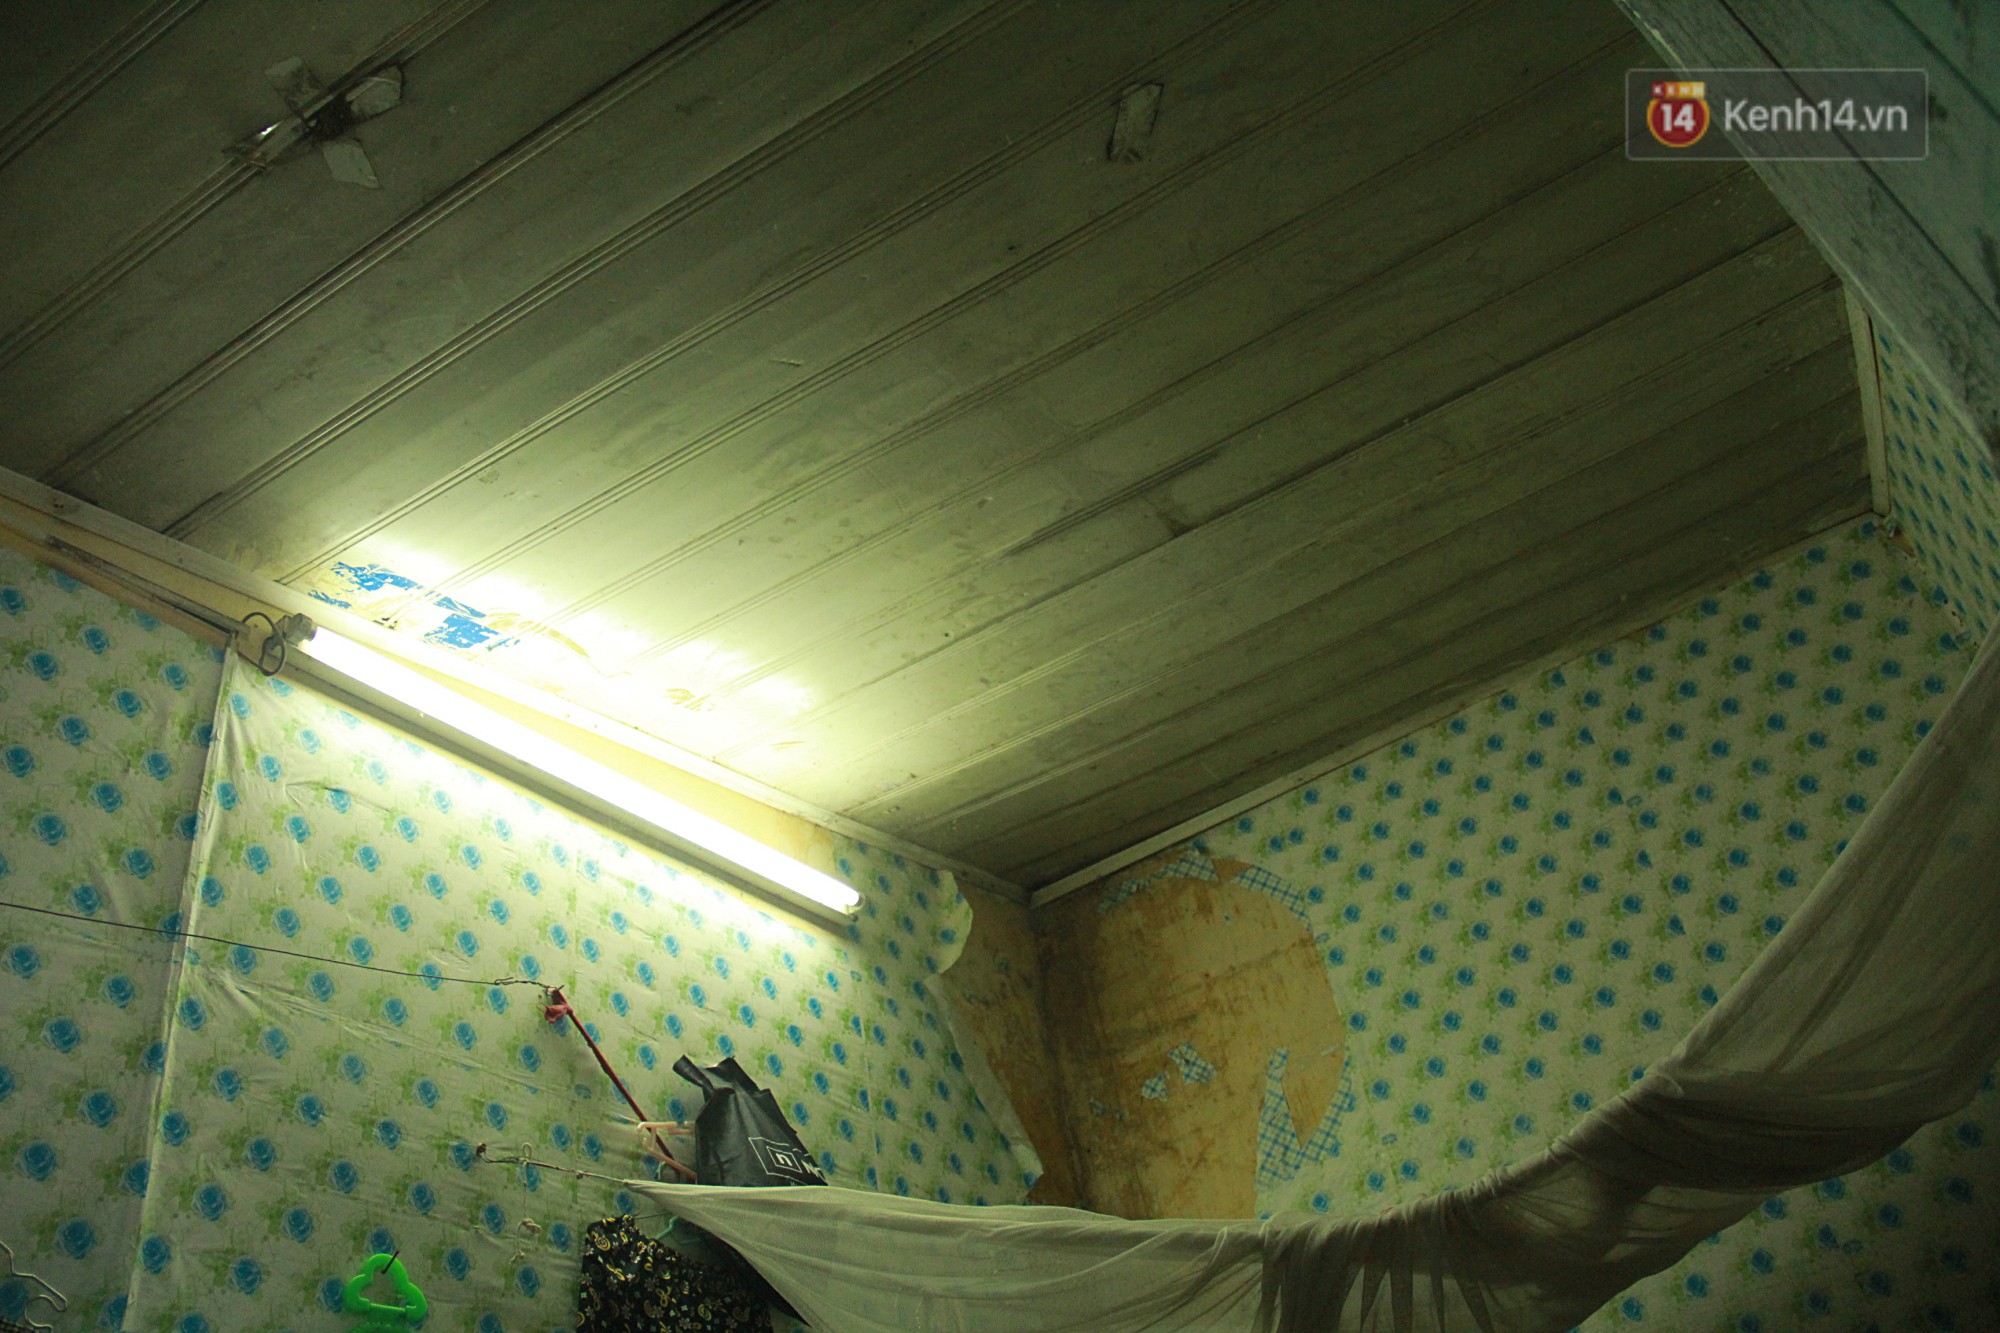 Dân xóm nghèo oằn mình trong những căn phòng trọ lợp mái tôn gần 50 độ C giữa lòng Hà Nội: Cái nóng hầm hập như muốn luộc chín người-11